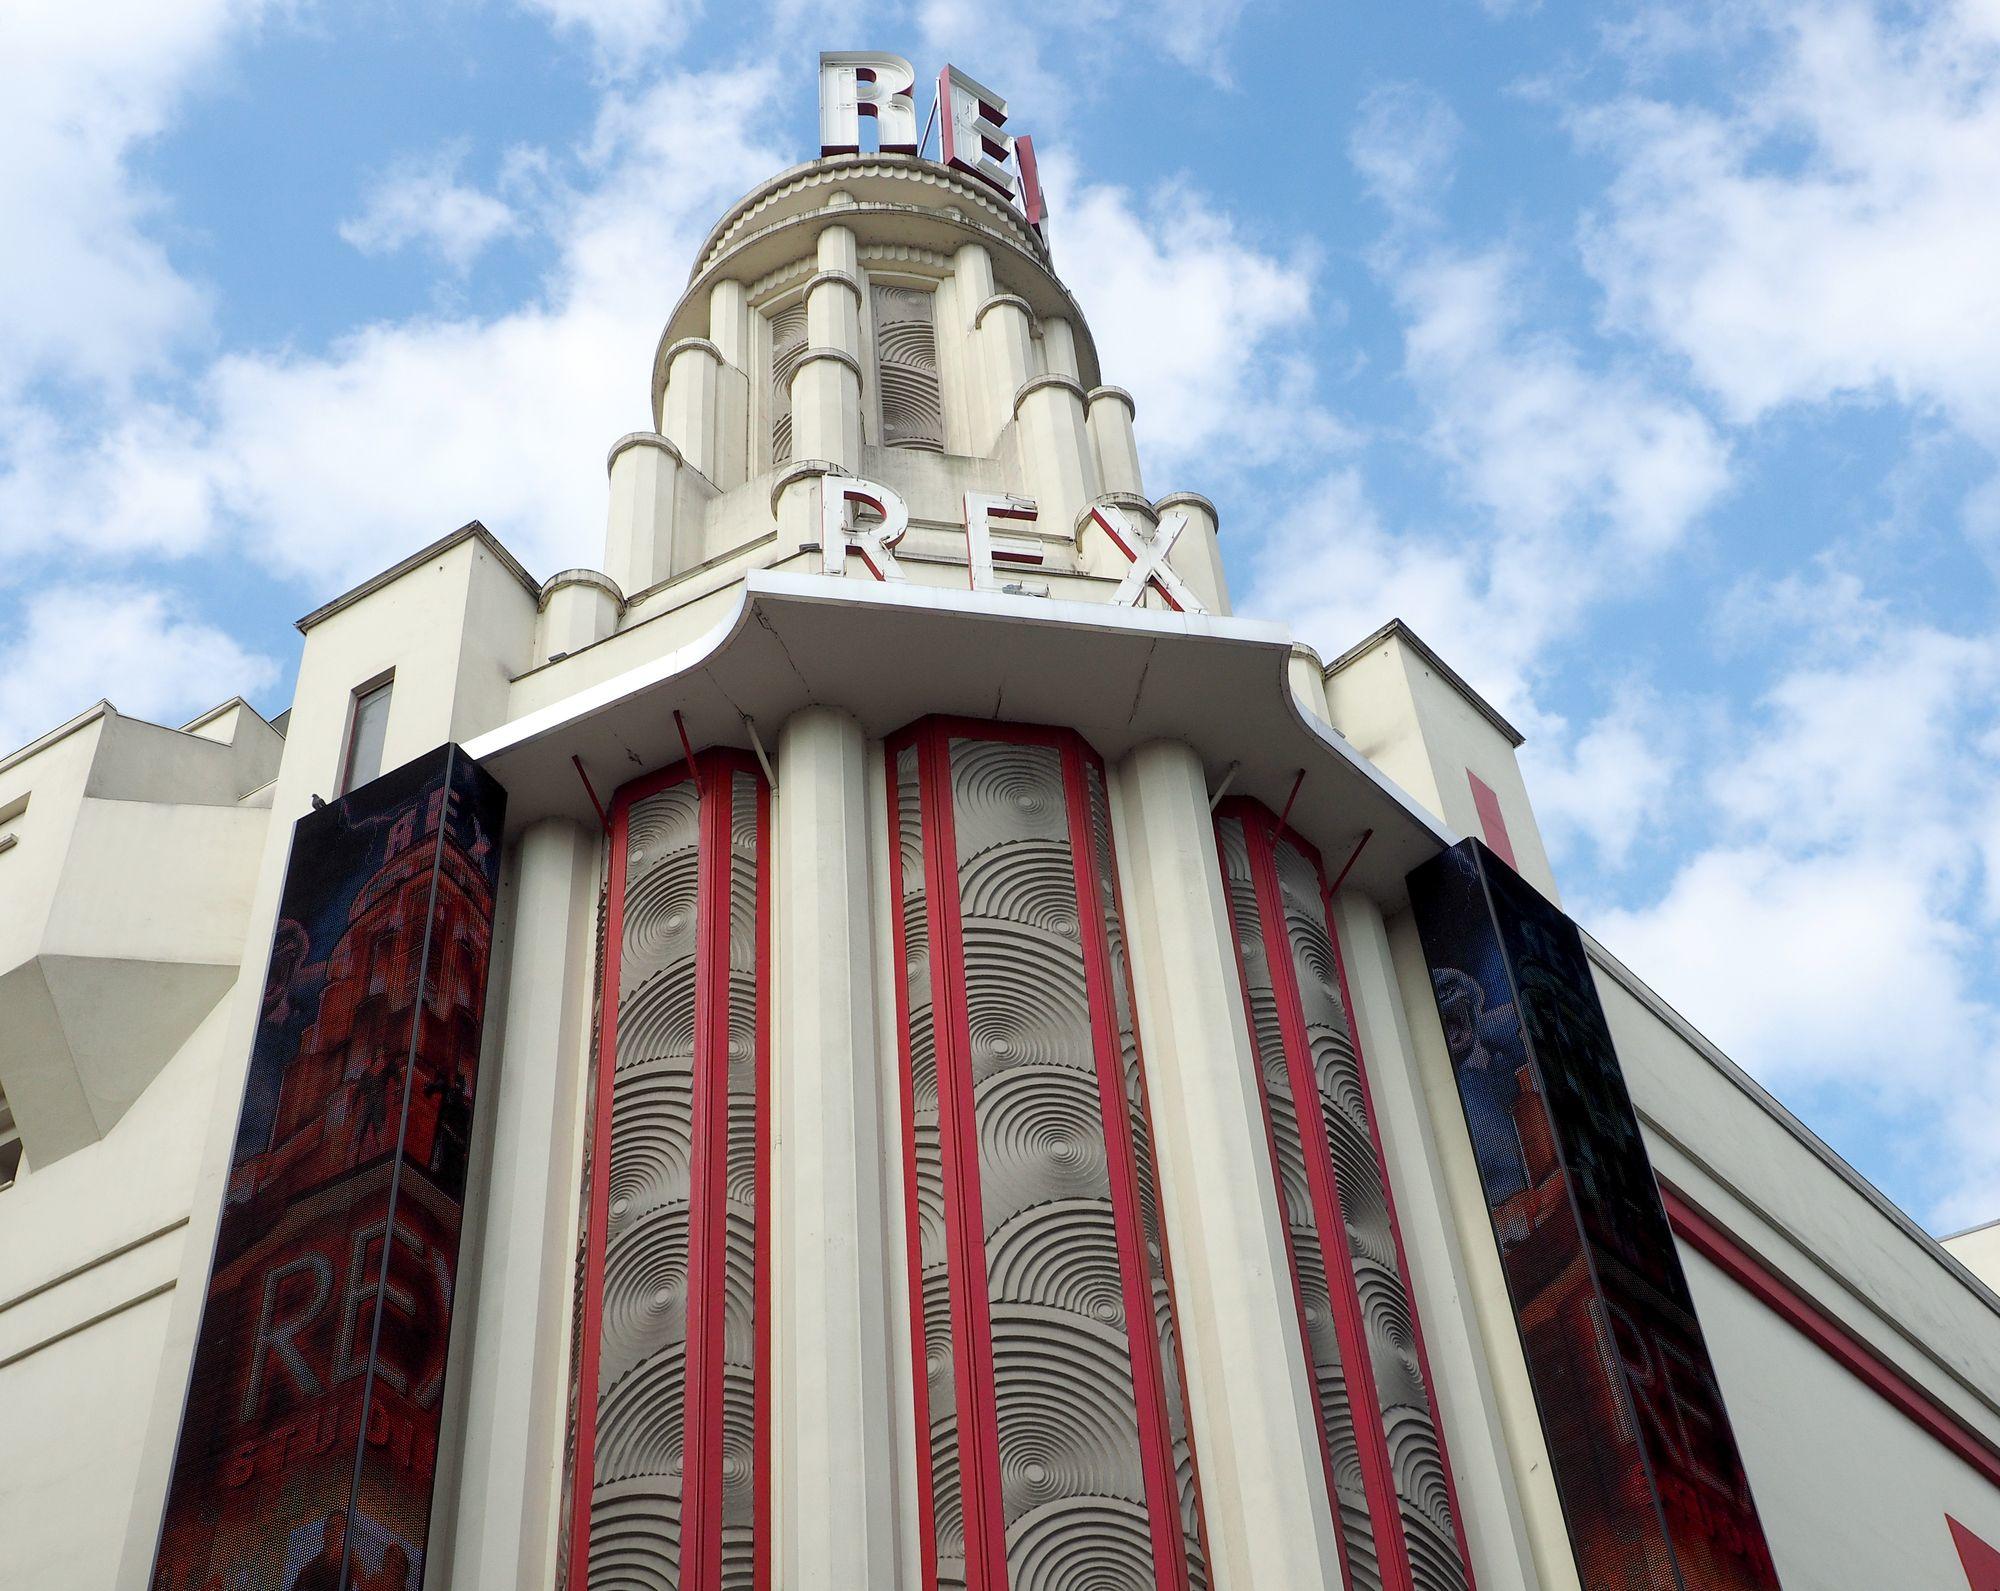 Sur les grands Boulevards, à quelques pas de l'hôtel Grammont, le cinema du Grand Rex domine par son architecture imposante. Voir un film dans la grande salle panoramique, c'est assister à un spectacle magnifique.